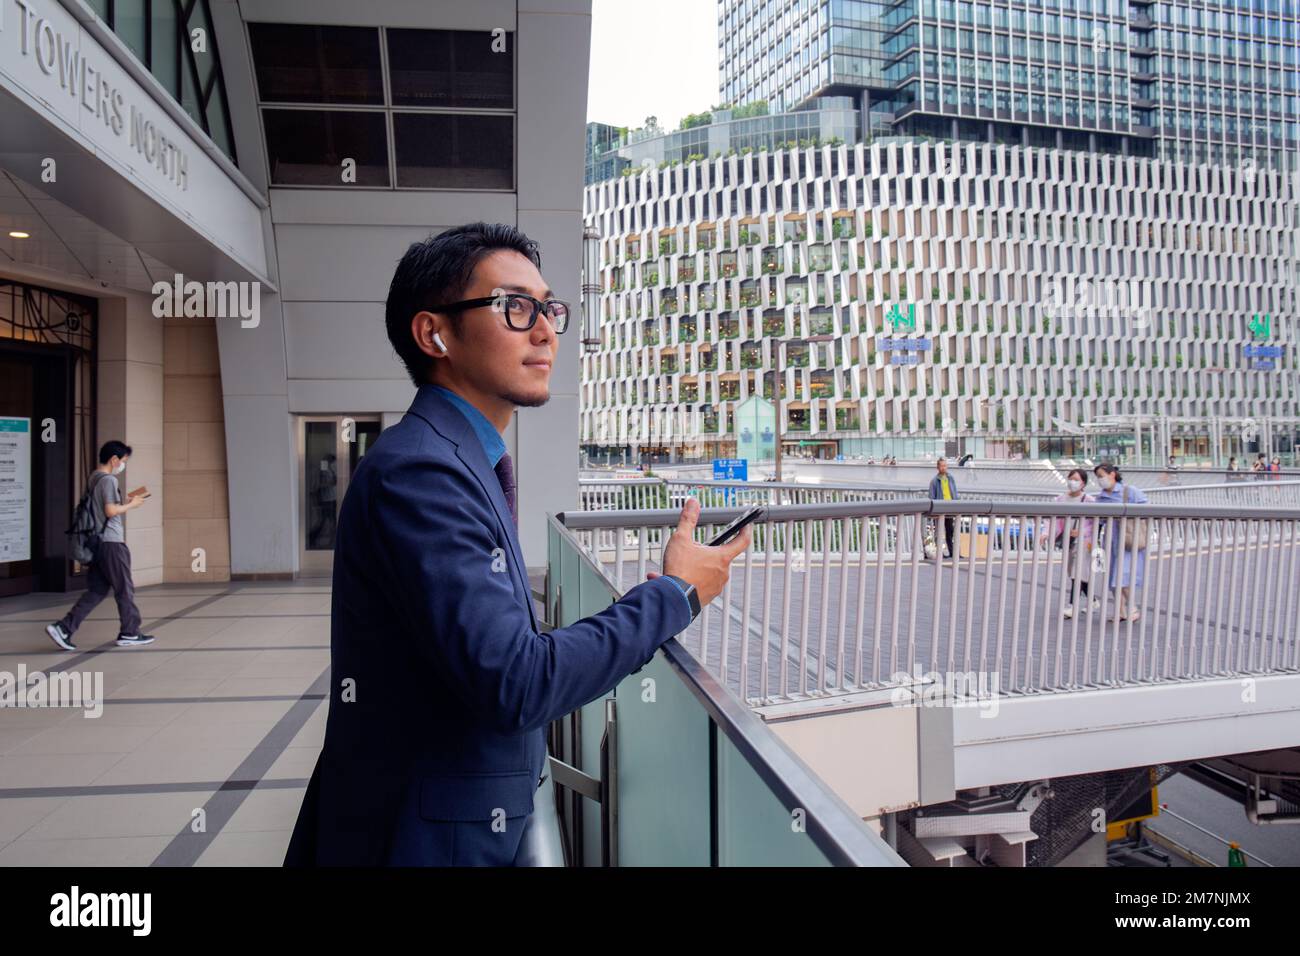 Ein junger Geschäftsmann in der Stadt, der unterwegs ist, ein Mann in einer blauen Jacke, der sein Handy in der Hand hält und Ohrstöpsel trägt. Stockfoto